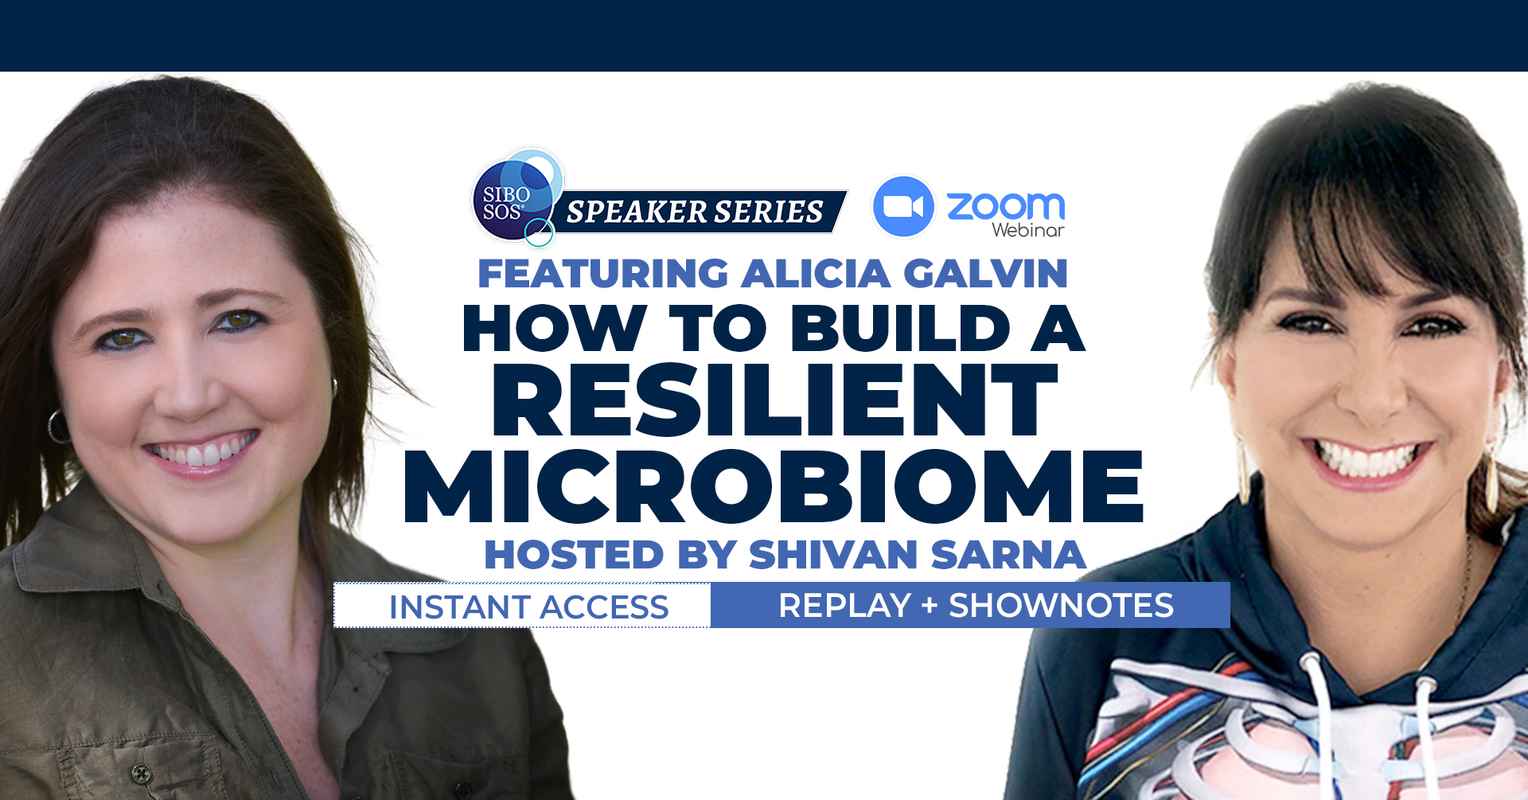 Alicia Galvin Event Cover - Instant Access